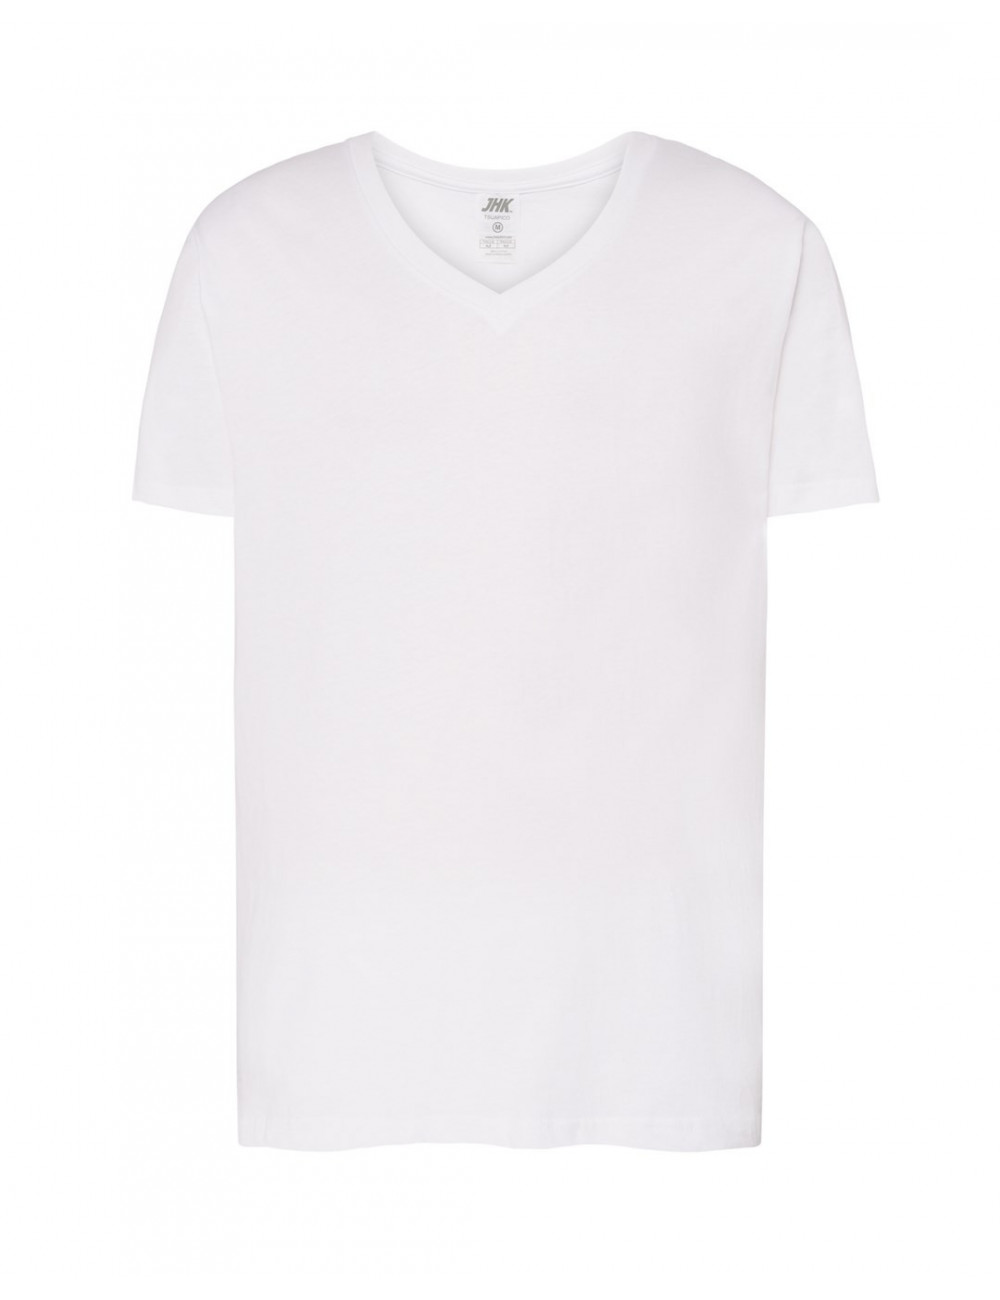 Koszulka męska tsua pico urban v-neck wh white Jhk